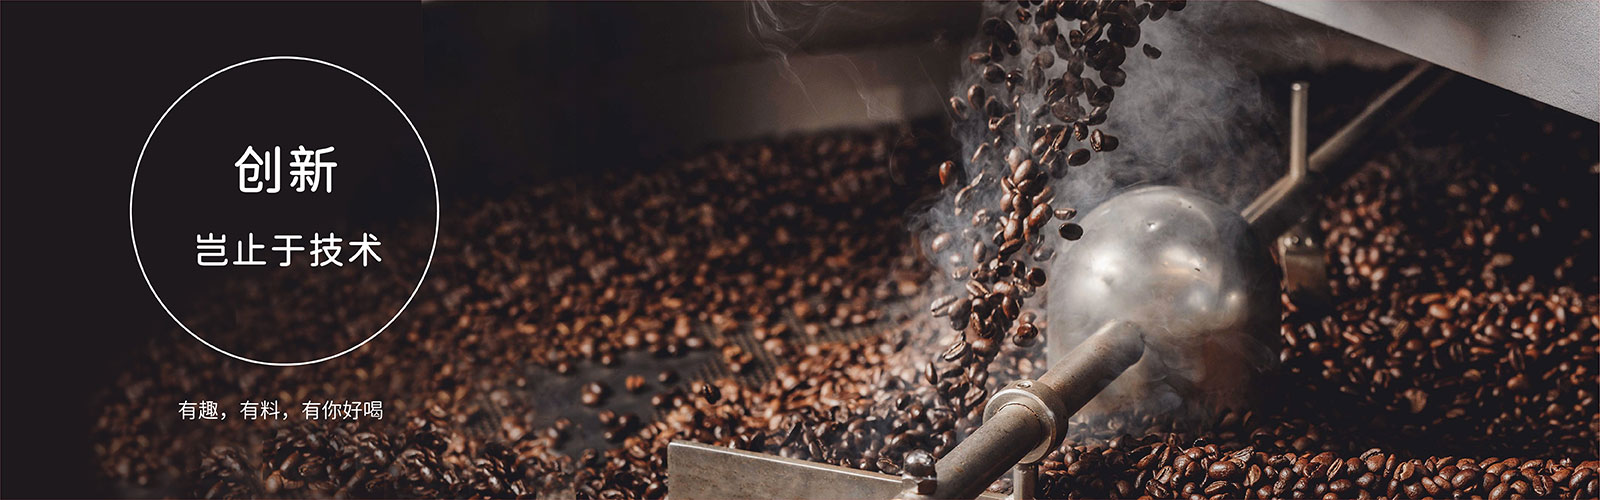 咖啡供应链-咖啡豆